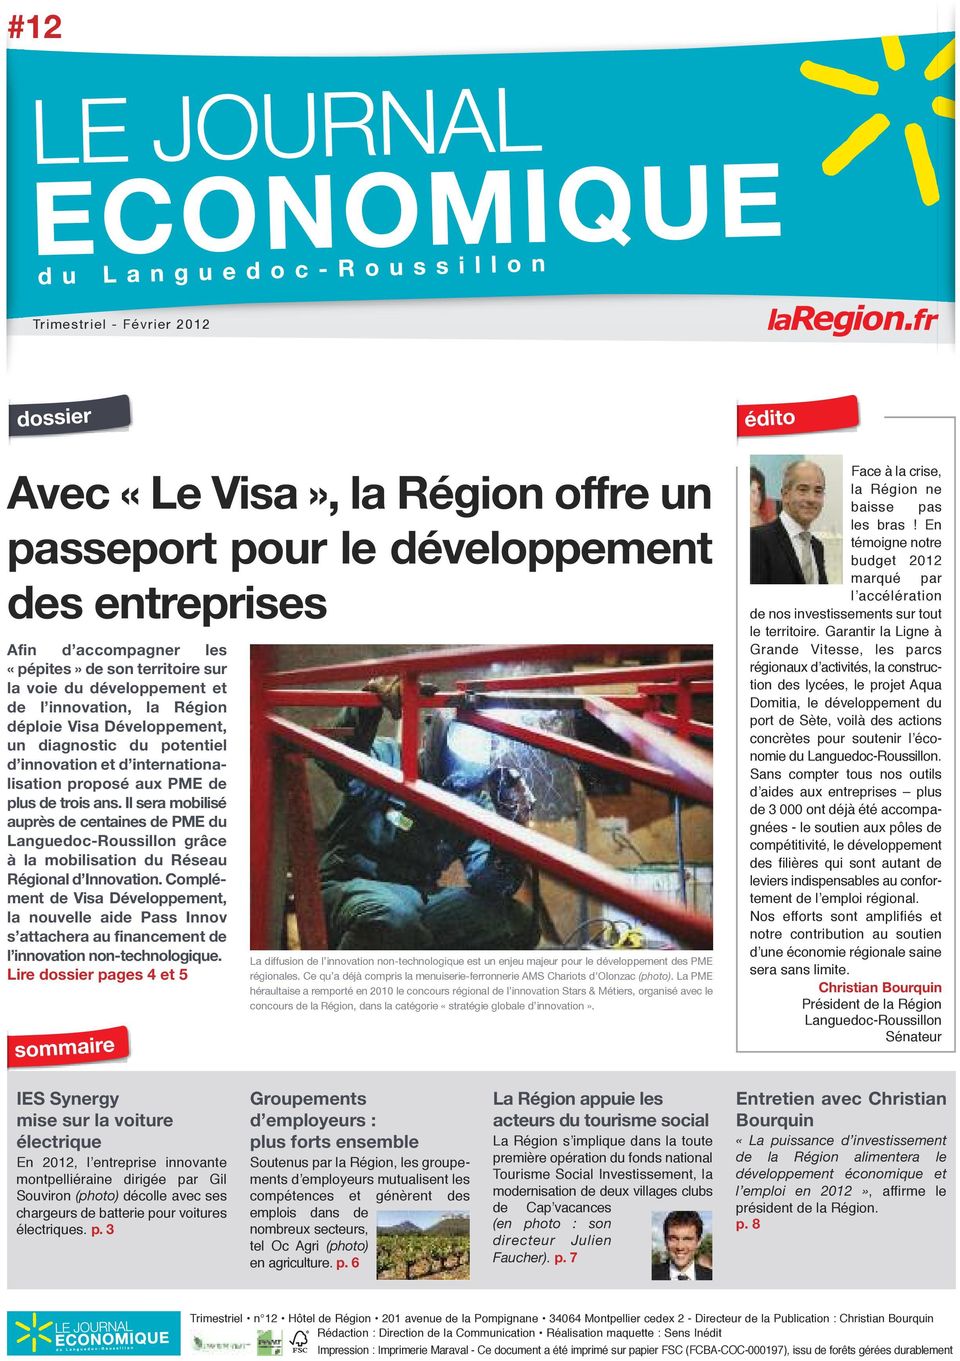 Il sera mobilisé auprès de centaines de PME du Languedoc-Roussillon grâce à la mobilisation du Réseau Régional d Innovation.